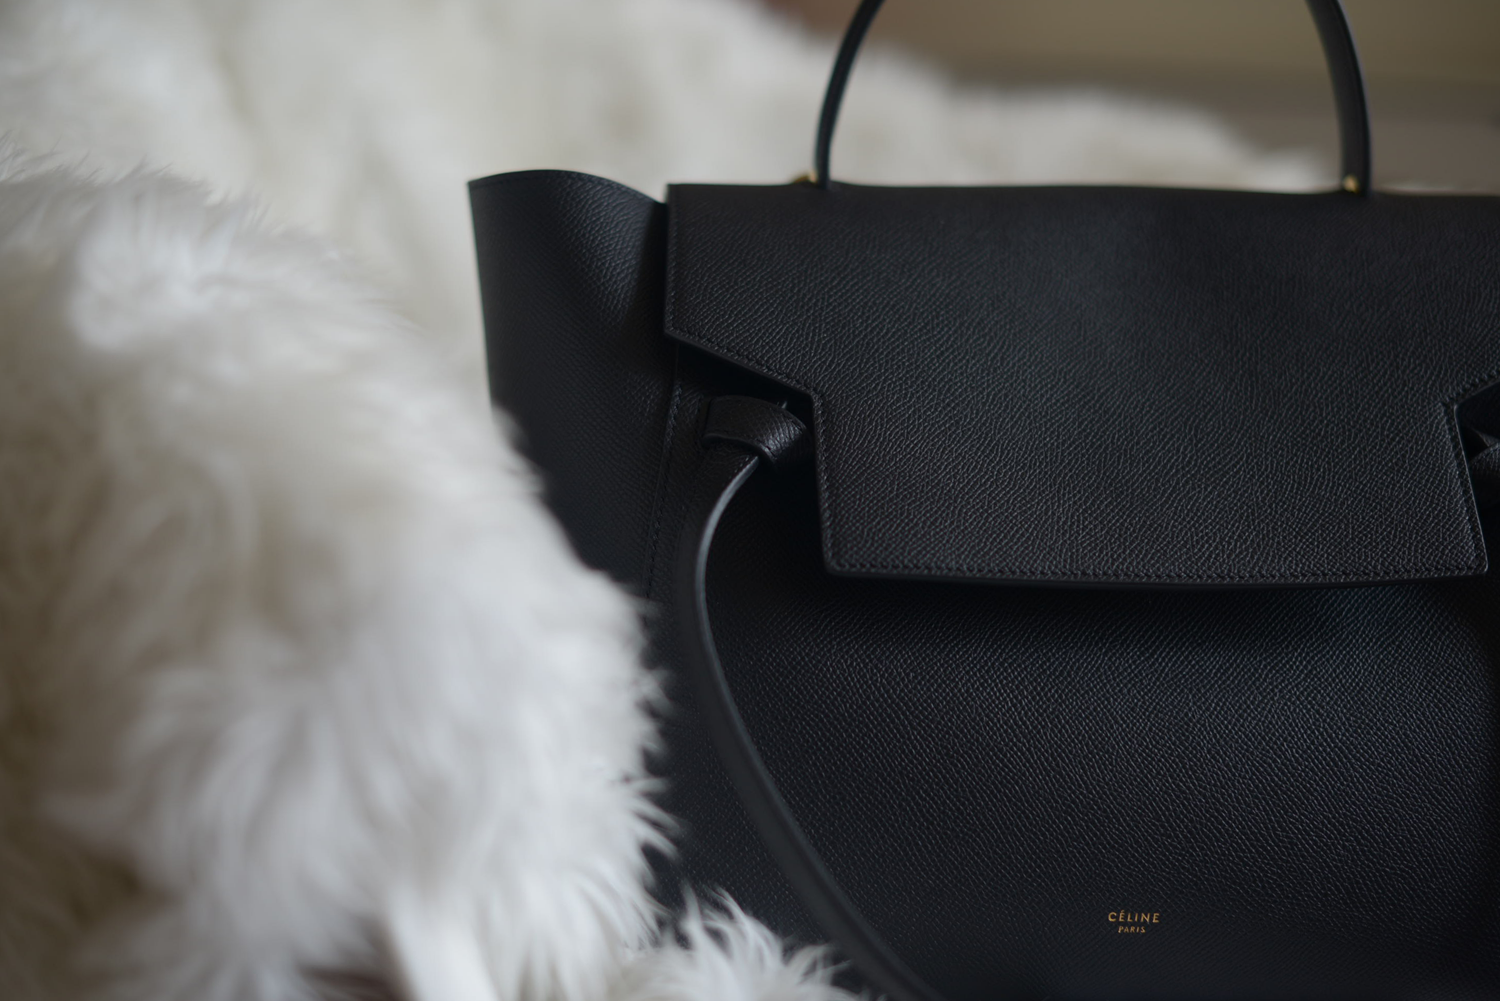 Celine Belt Bag Black Grained Leather | FOREVERVANNY.com